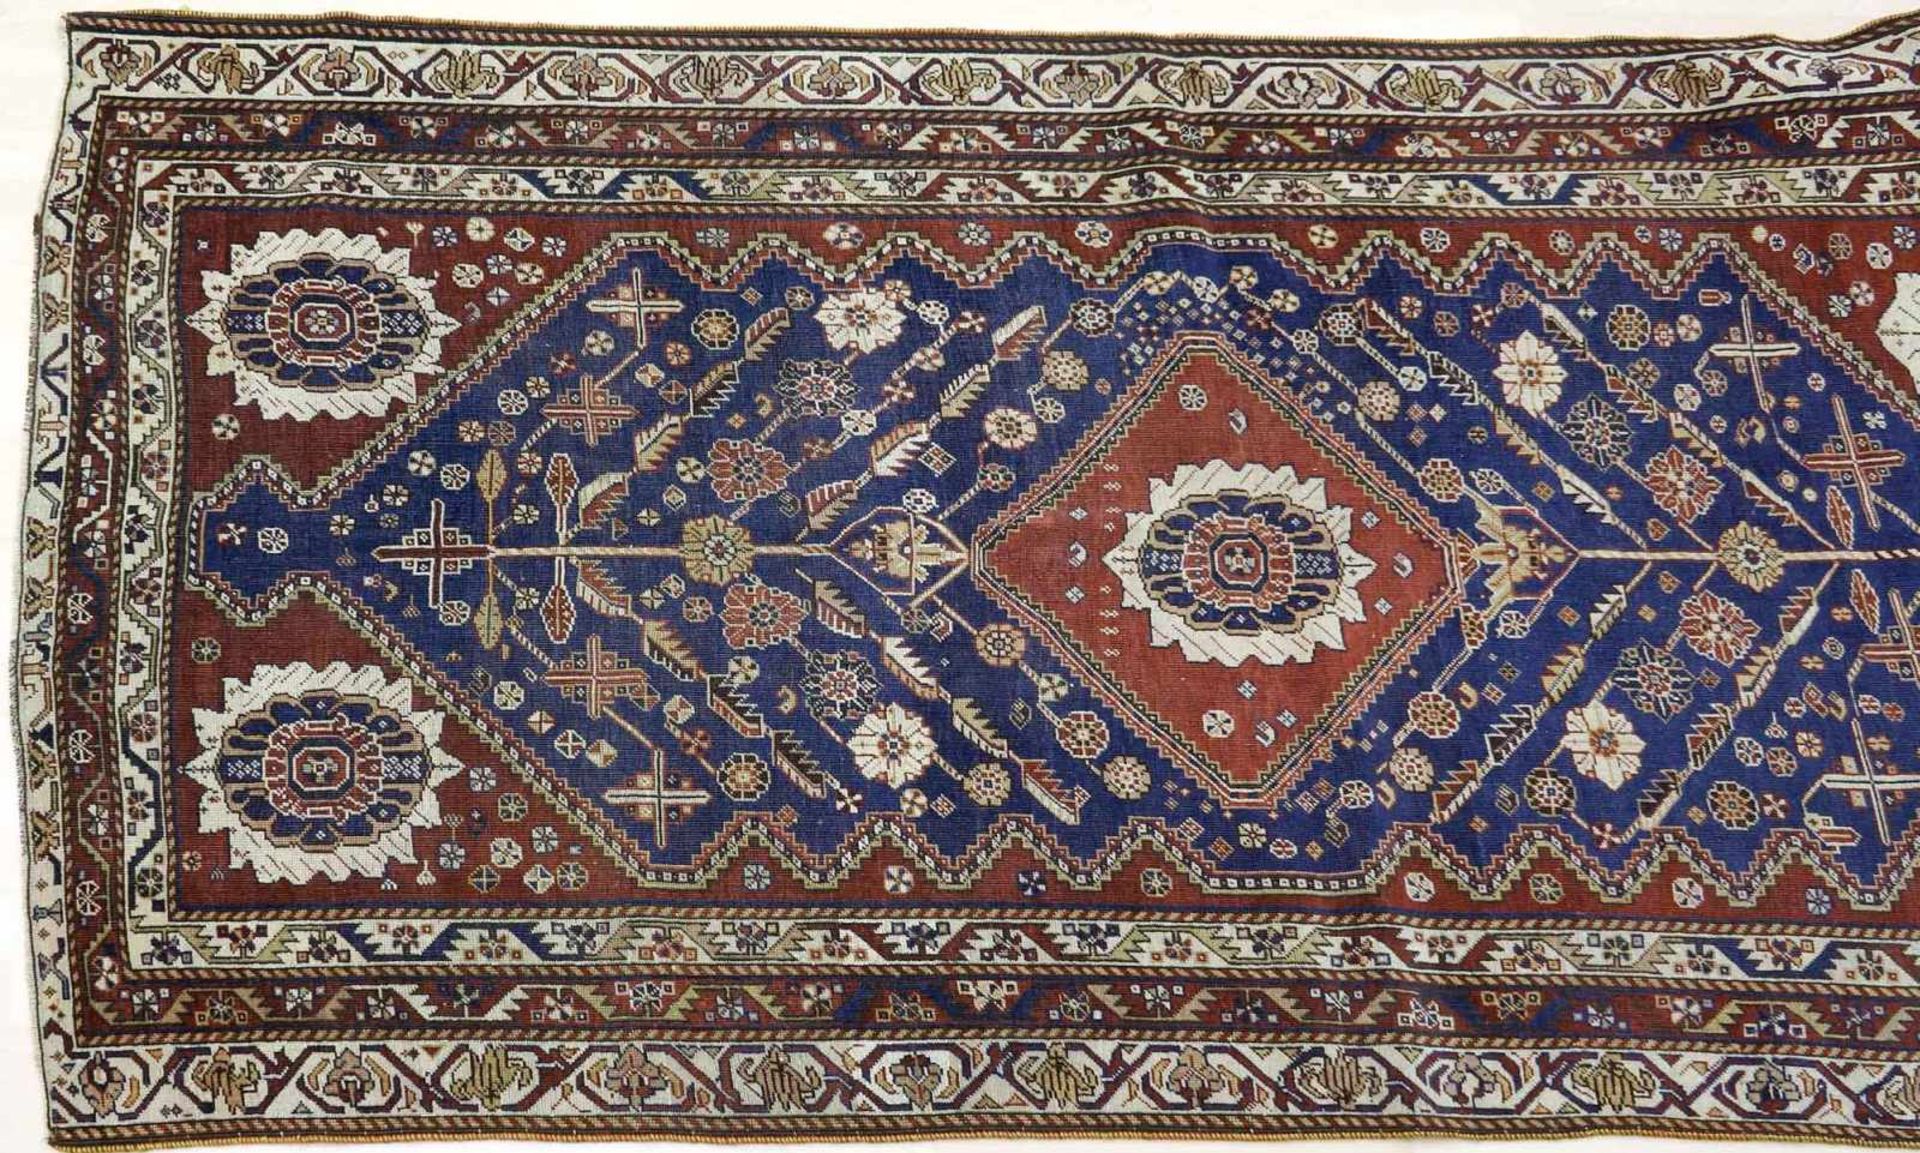 Teppich, Brücke, Kaukasus, wohl Aserbeidschan, alt - antikWolle auf Wolle. Vier gleiche, schmale